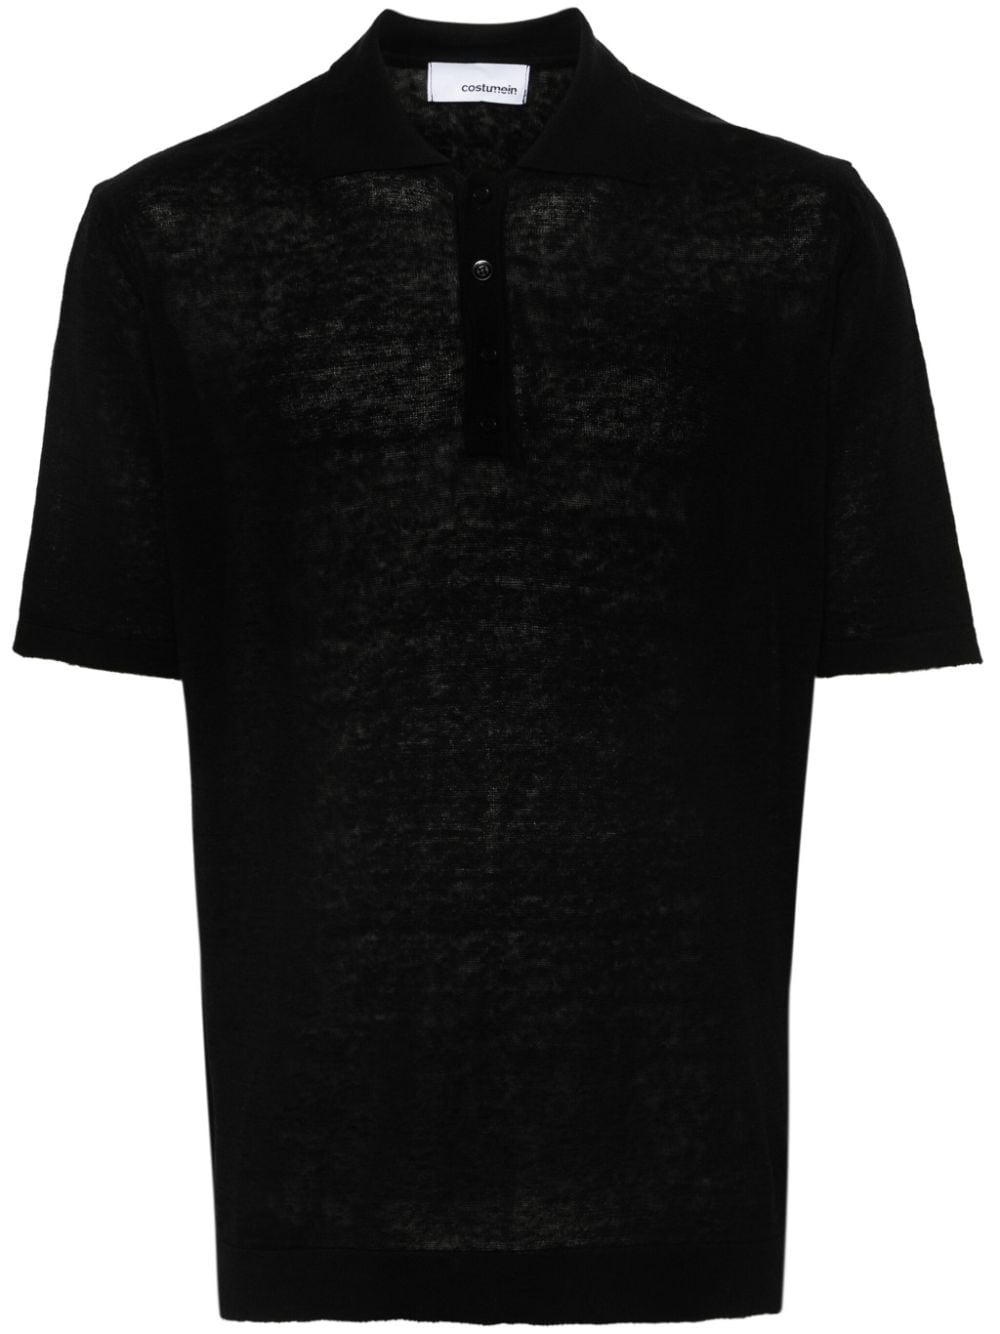 Costumein knitted polo shirt - Black von Costumein